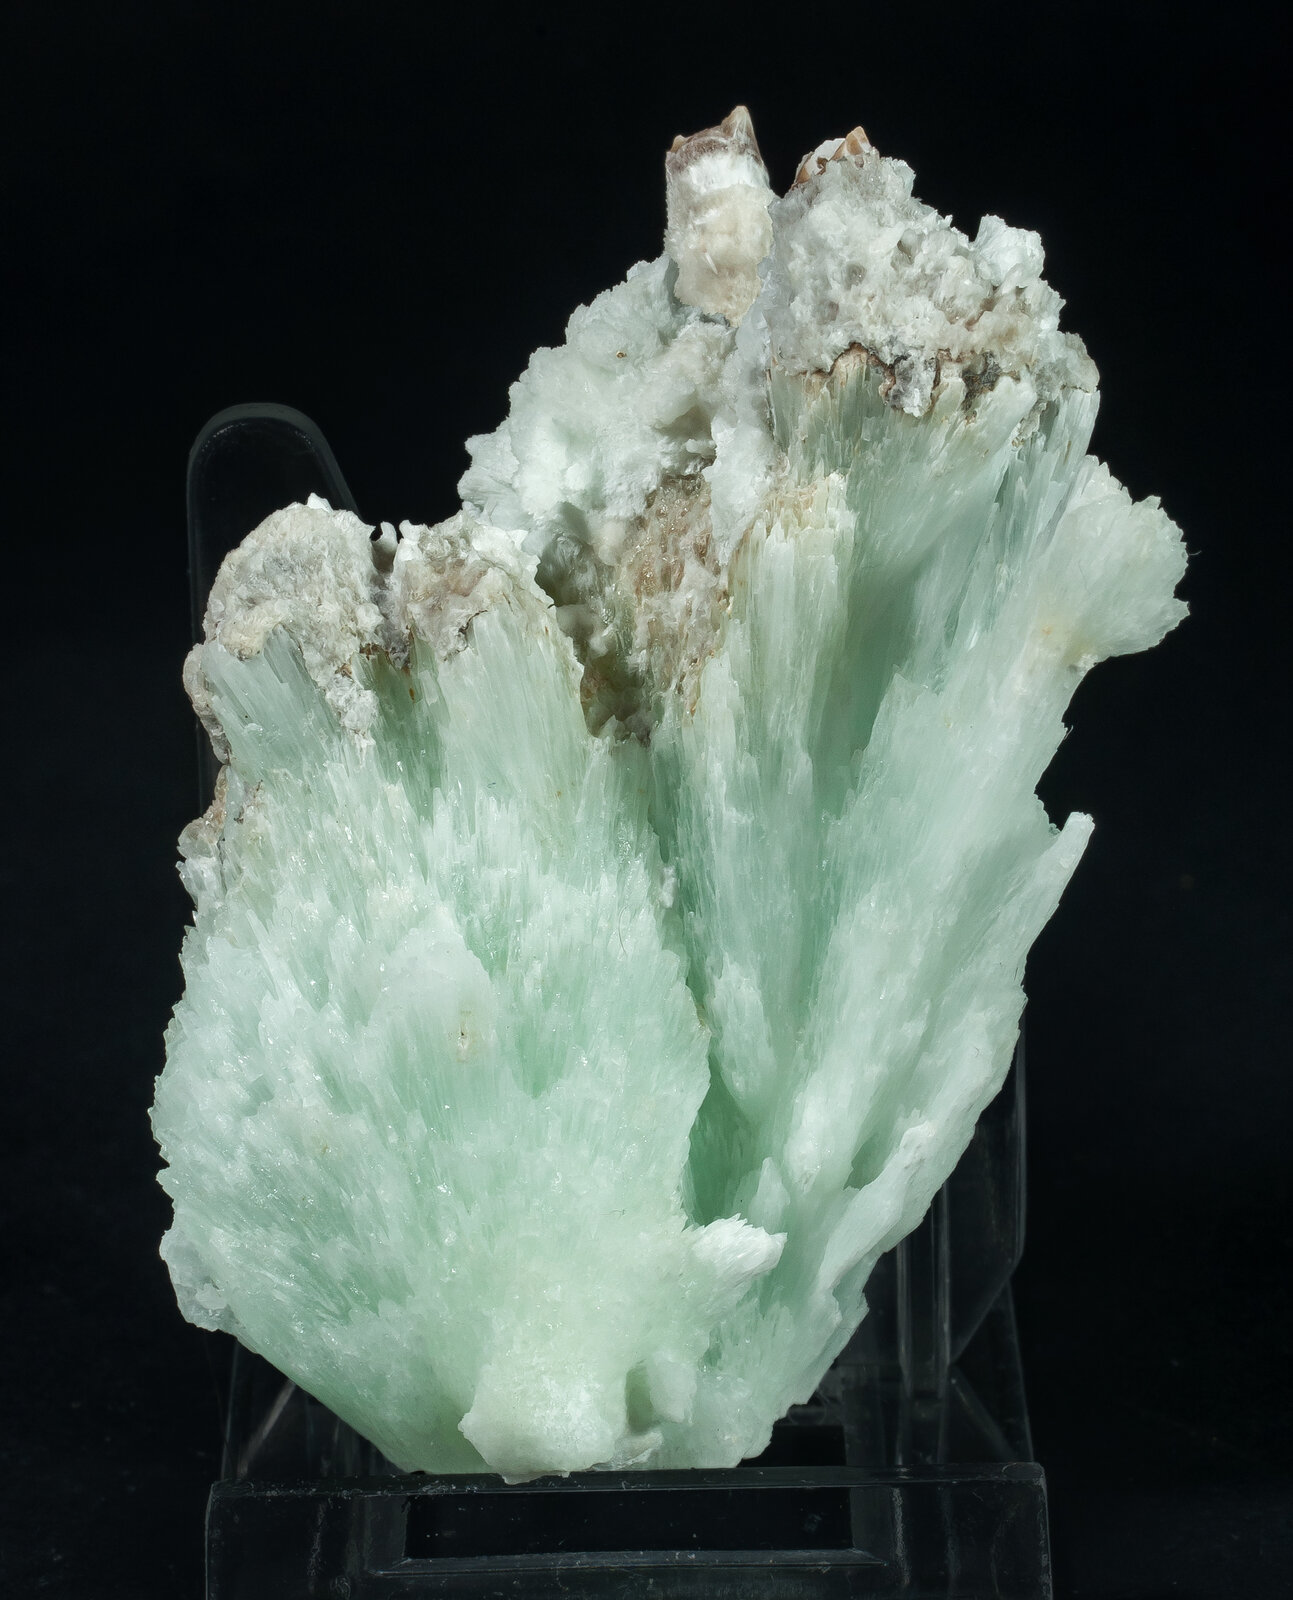 specimens/s_imagesAP8/Aragonite-JPR16AP8f.jpg